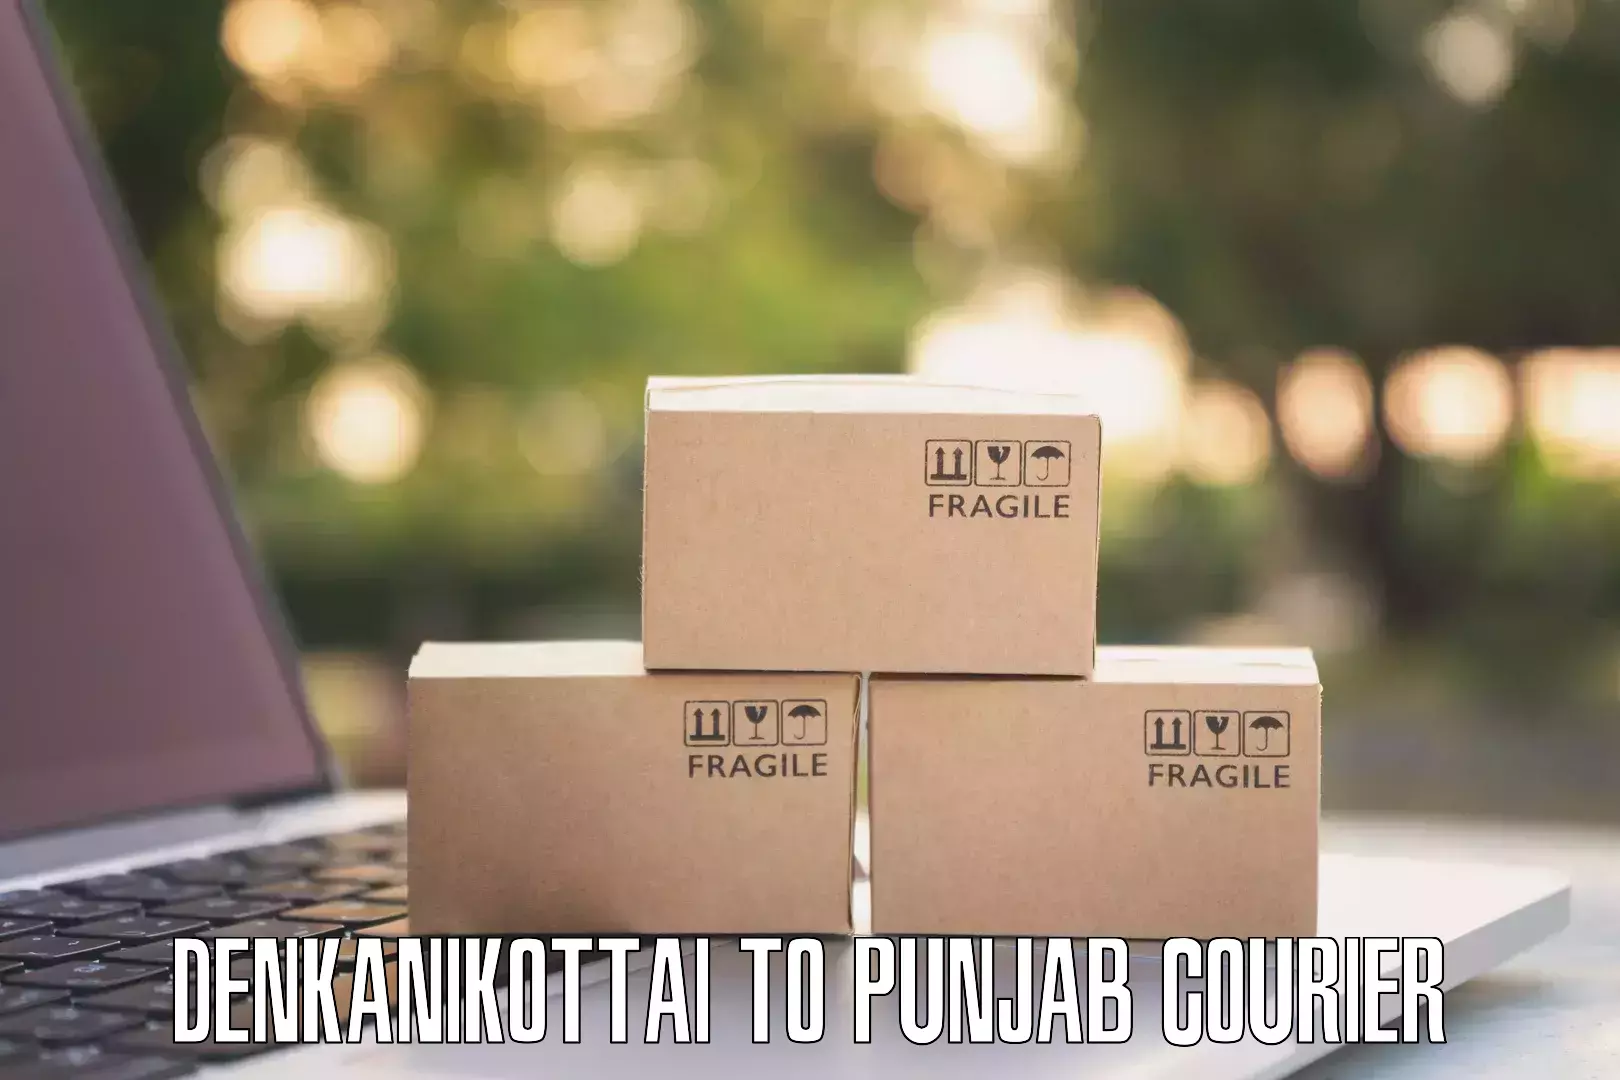 Courier app Denkanikottai to Phagwara